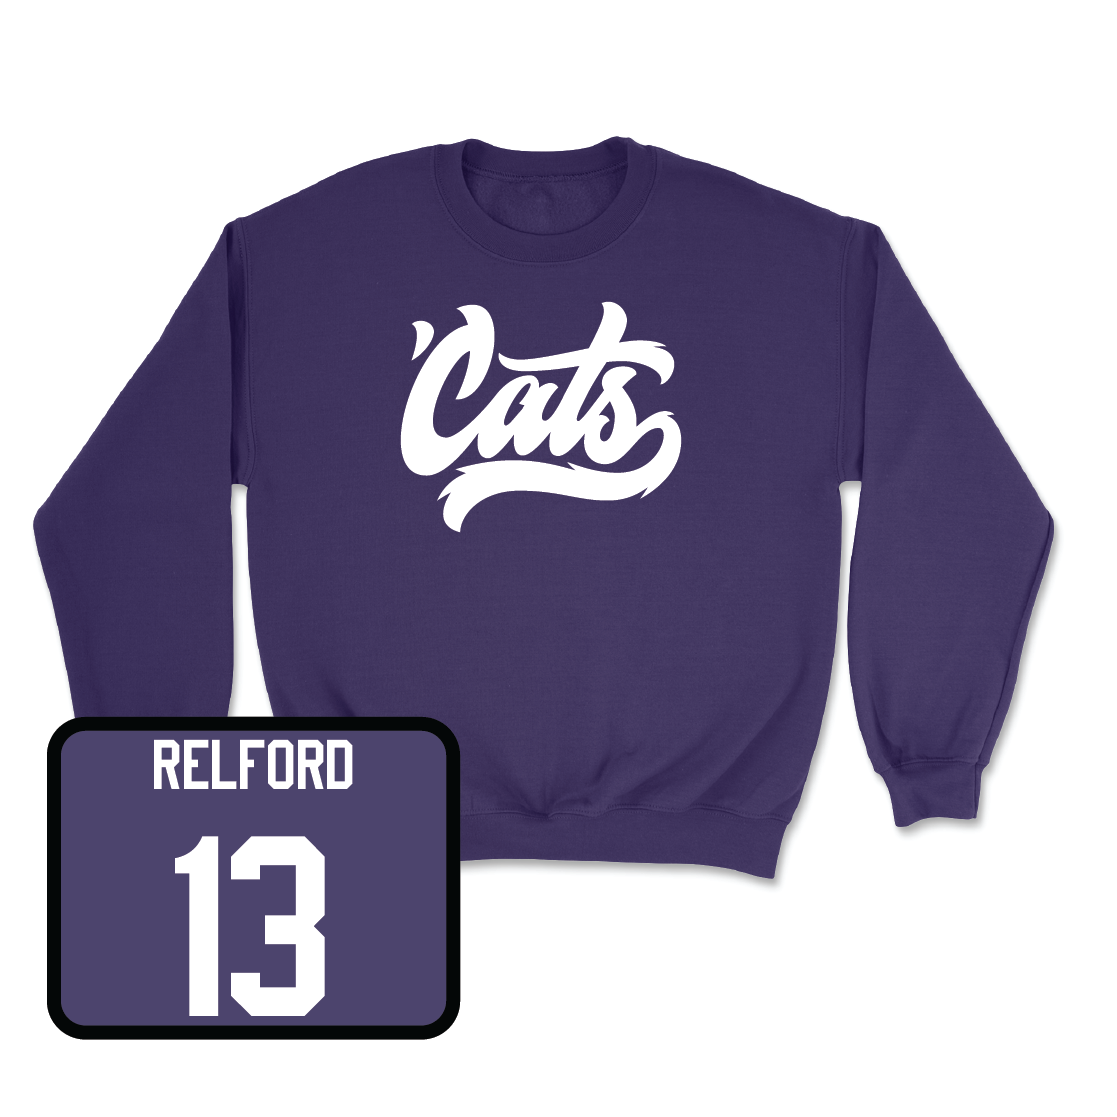 Purple Women's Field Hockey 'Cats Crew - Chloe Relford